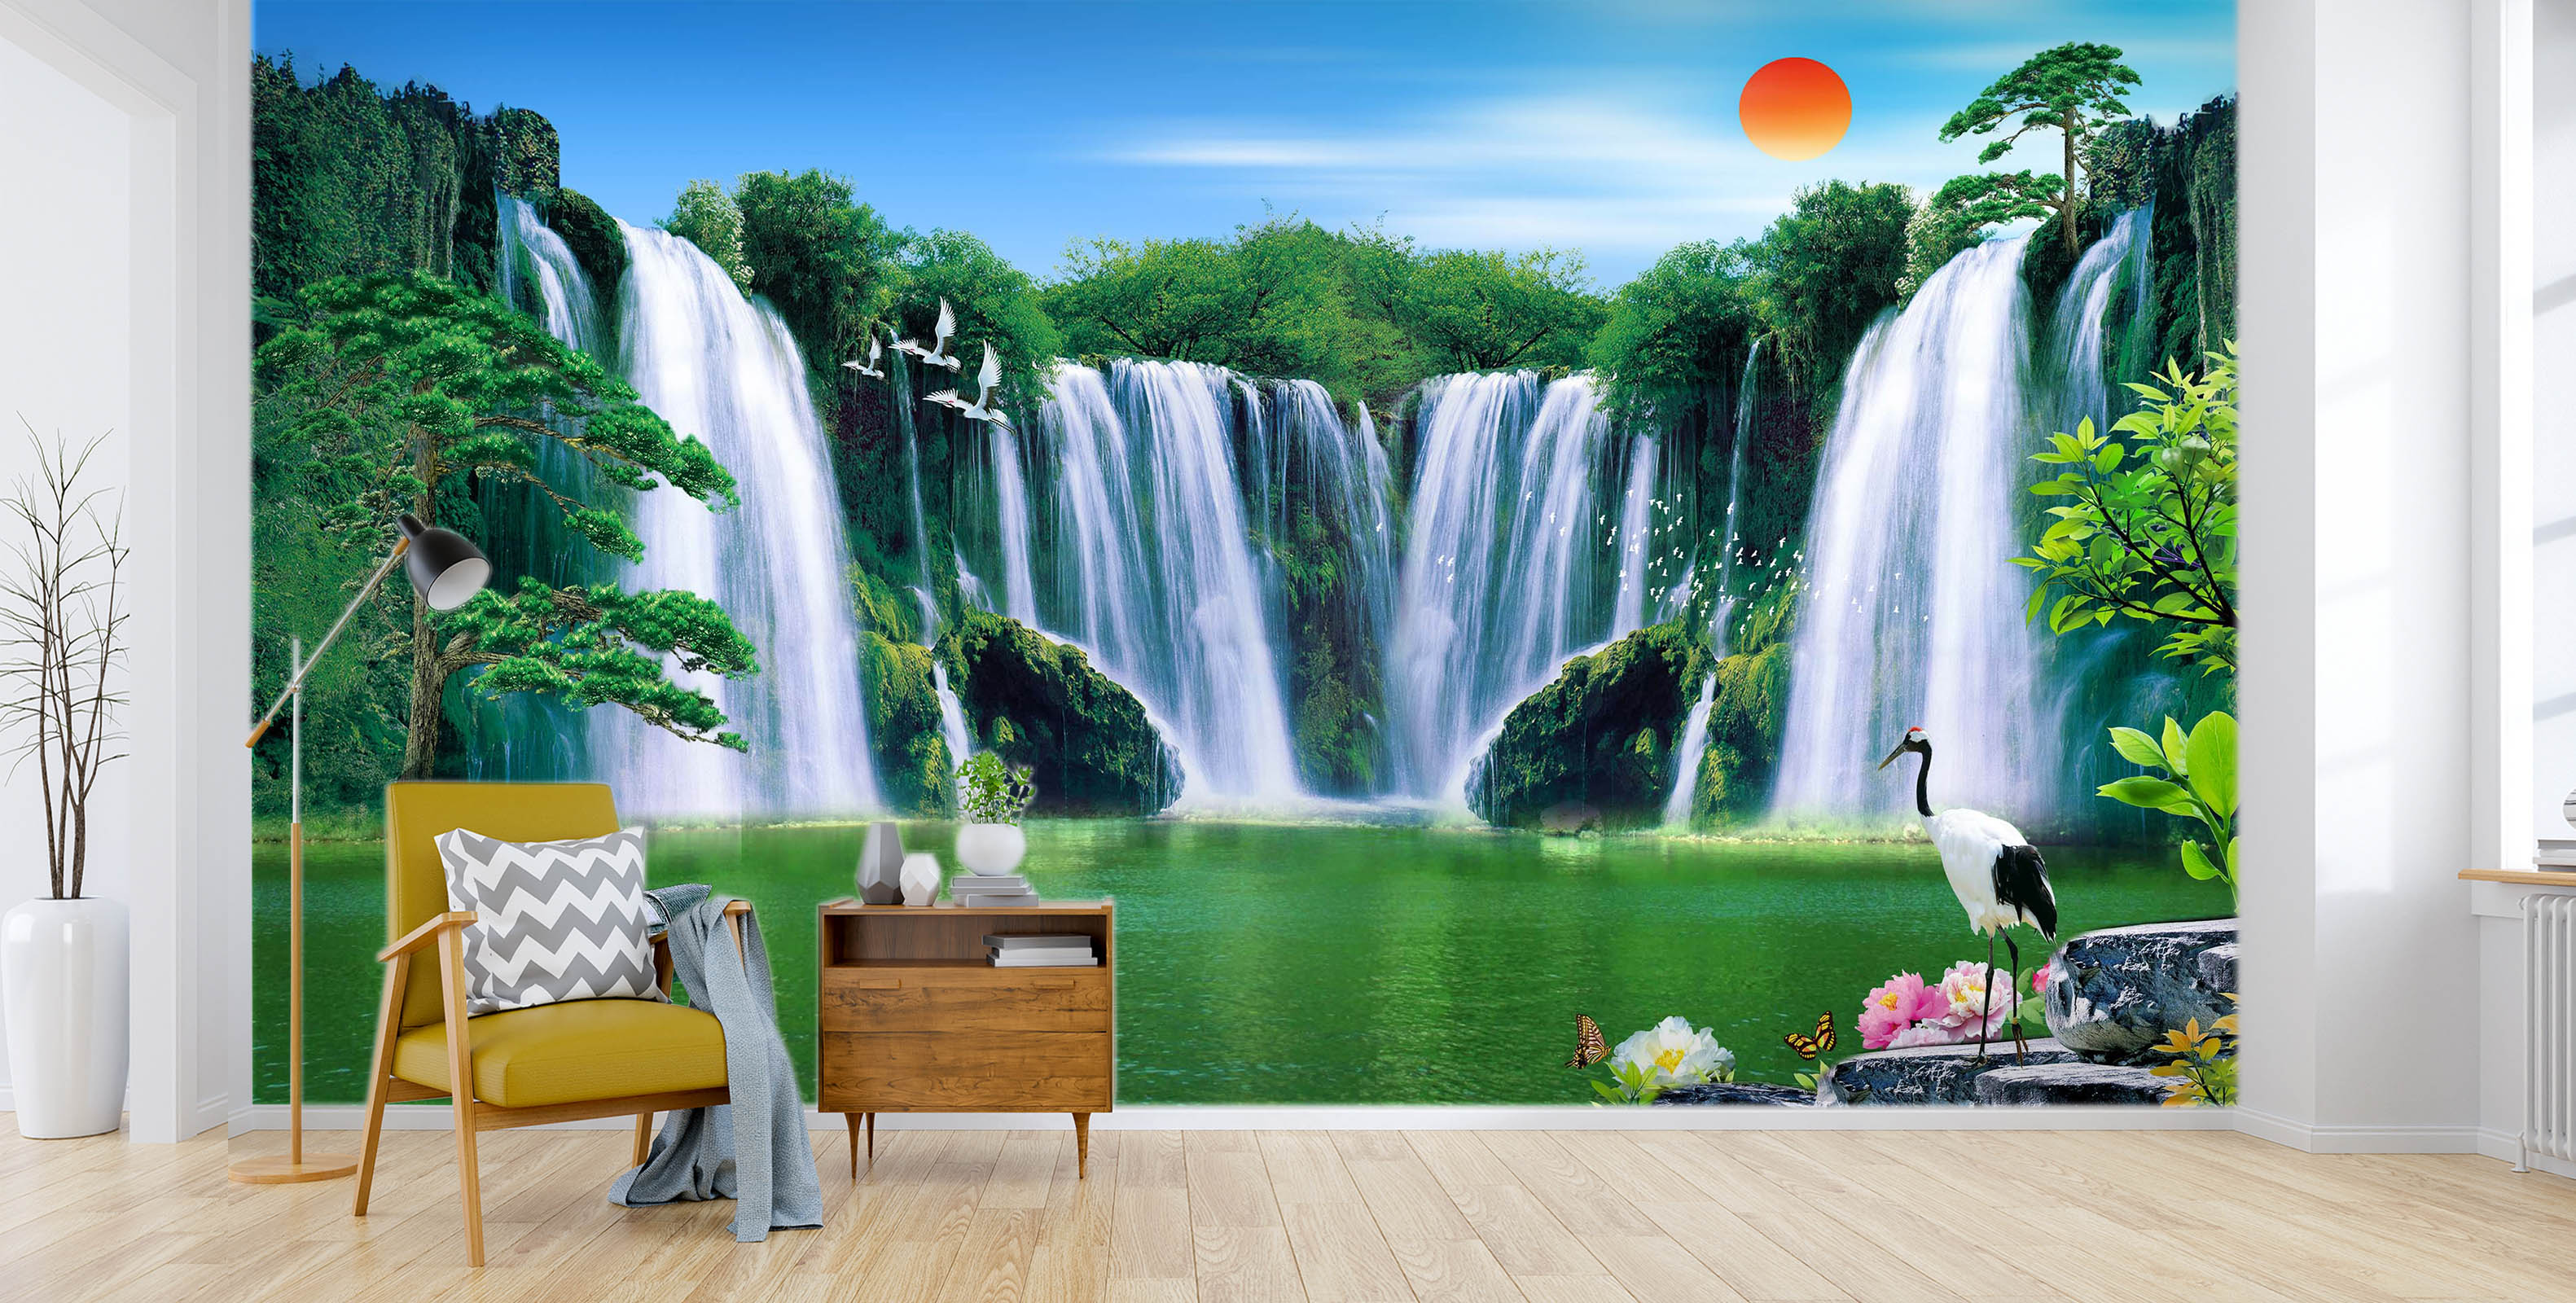 3D Landscape Waterfall 1503 Wall Murals